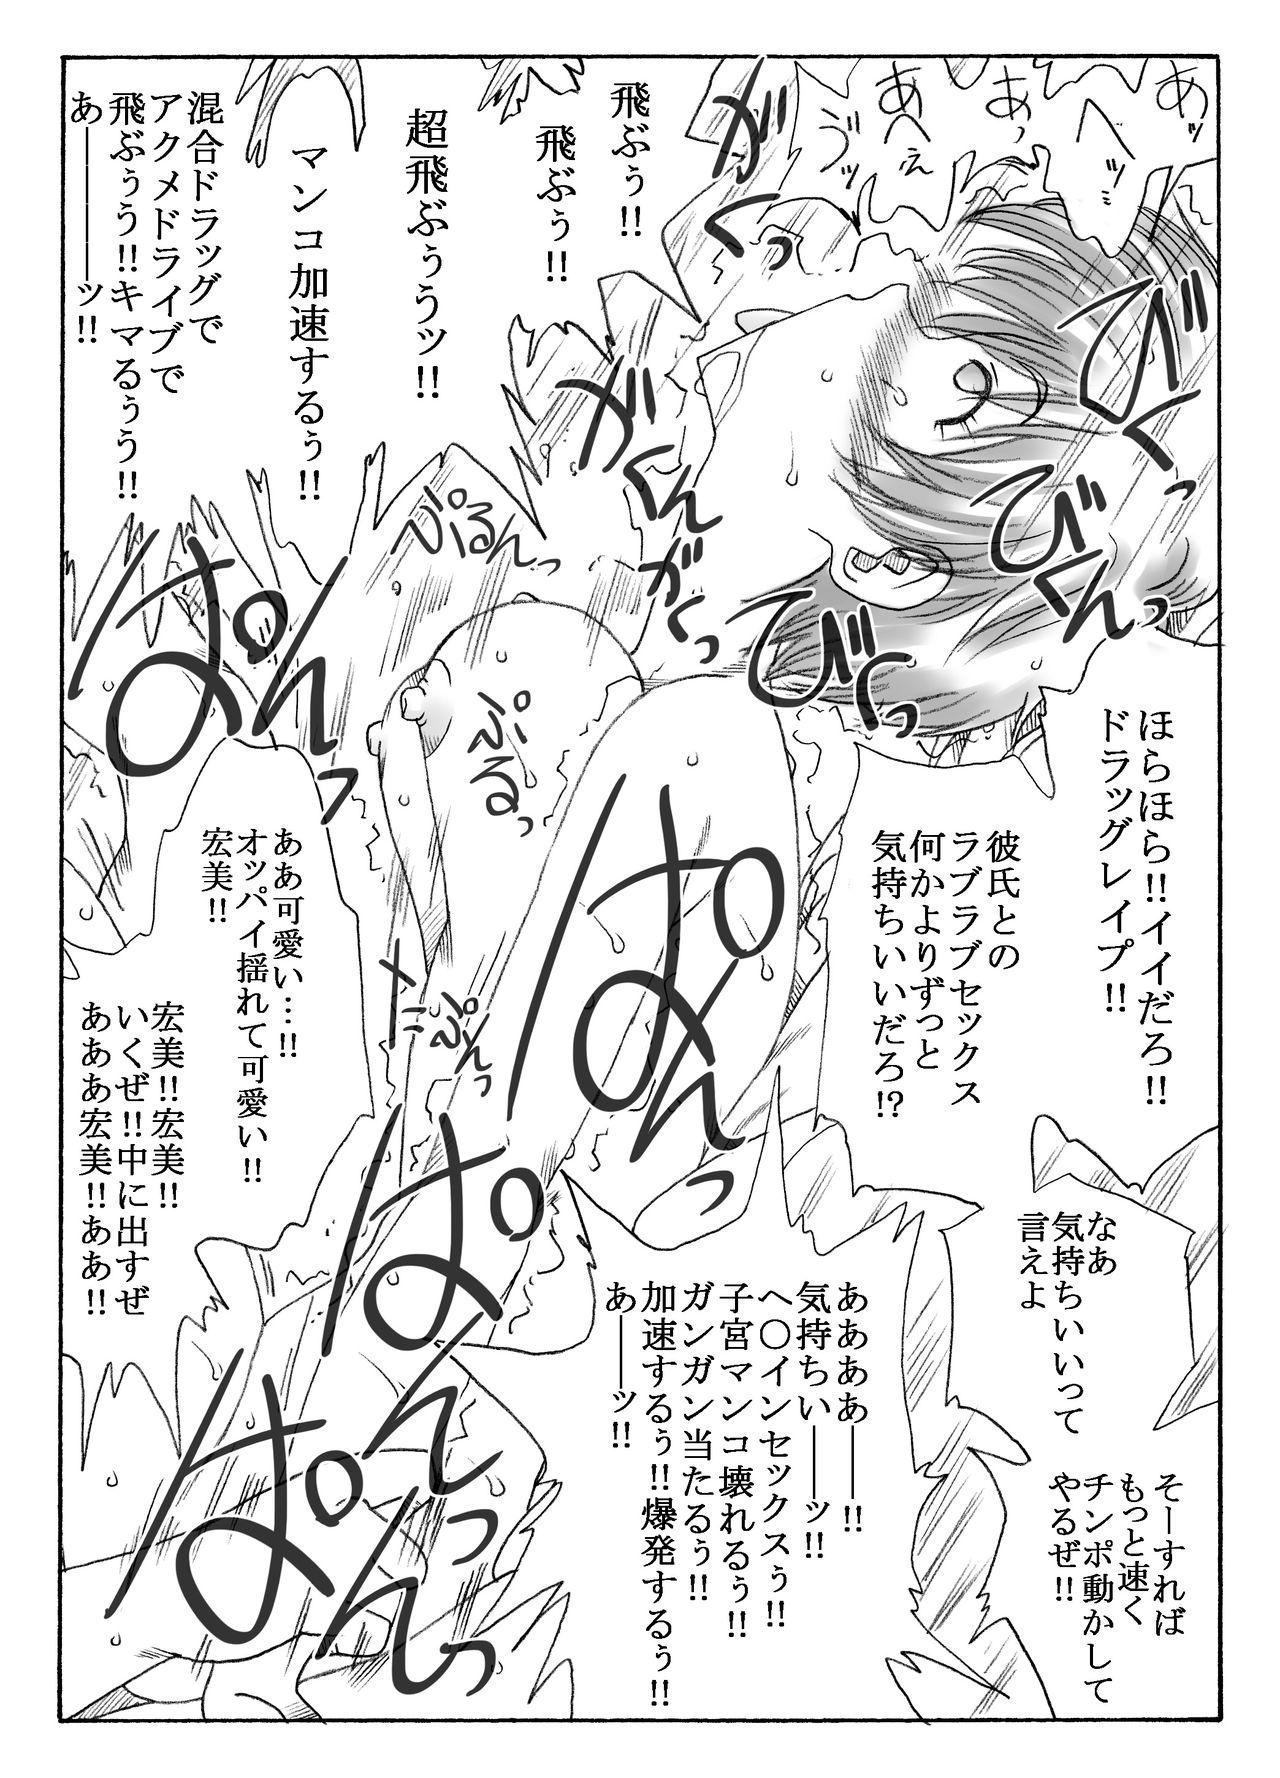 Masturbating kusuridukinisare ryoujyokusareru senseito seitotachi - Original Web - Page 5